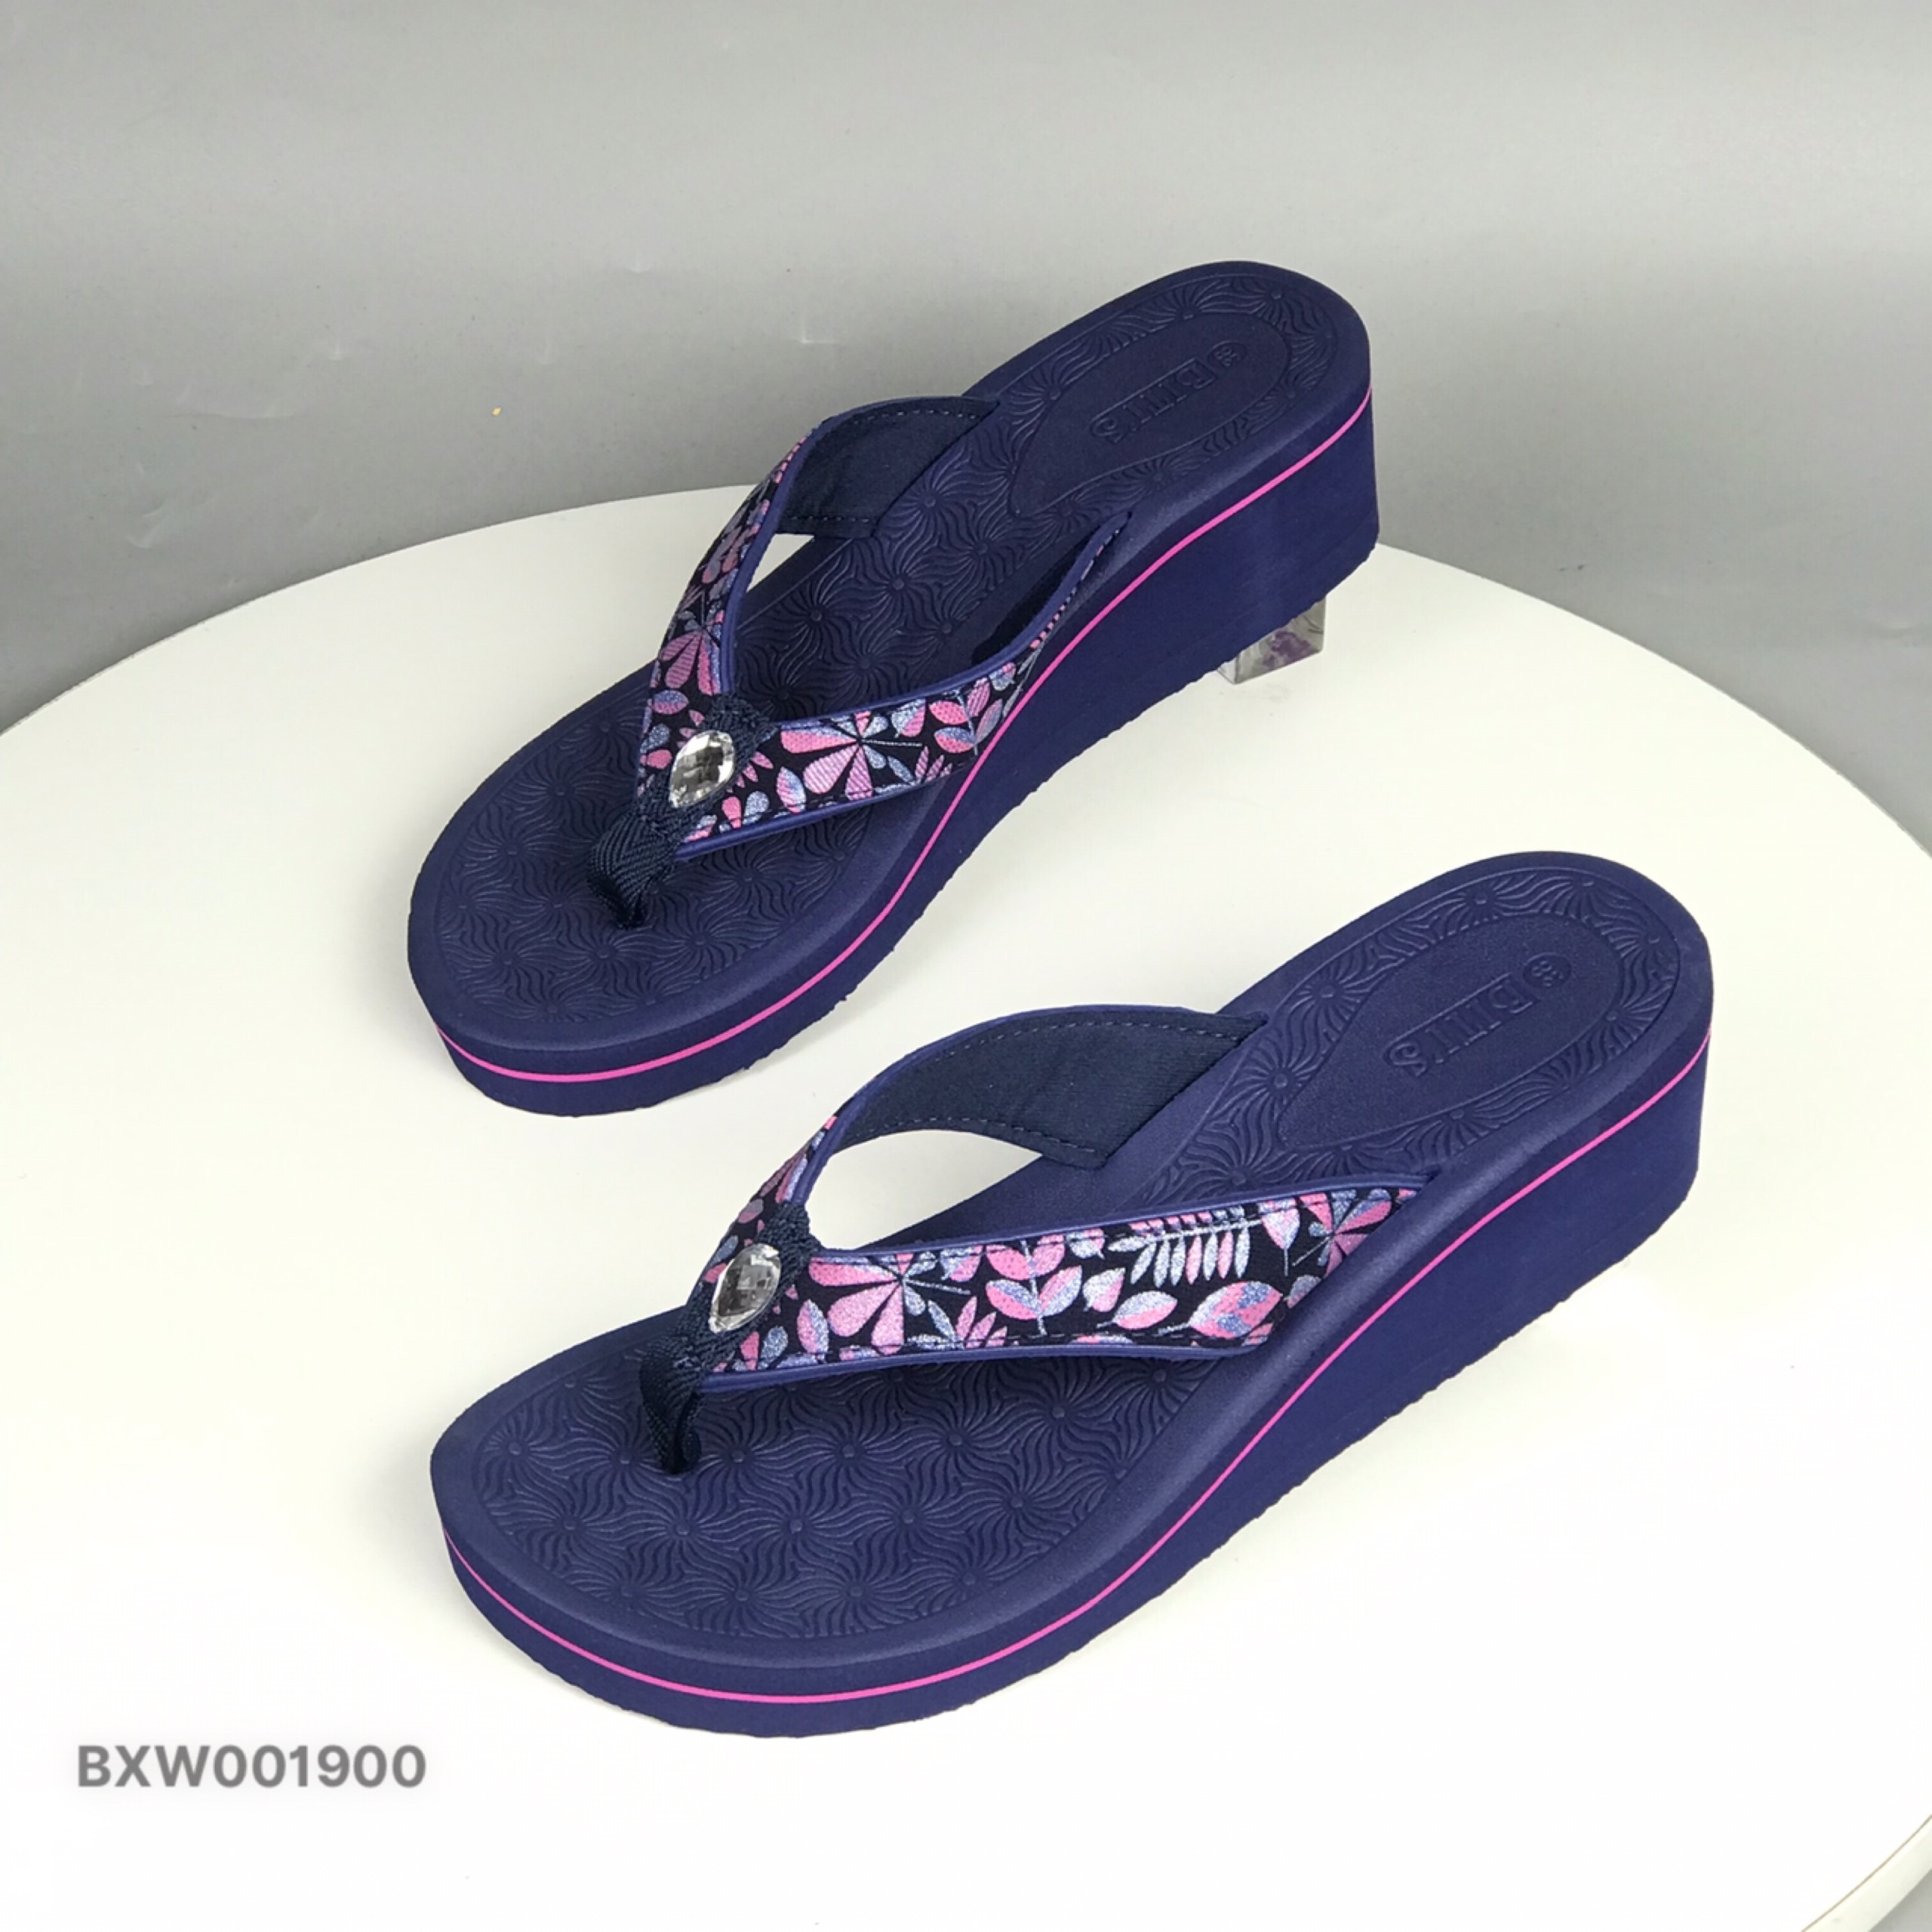 Bitis flip flops for women-rose flower beaded sandals Flip flops 7cm